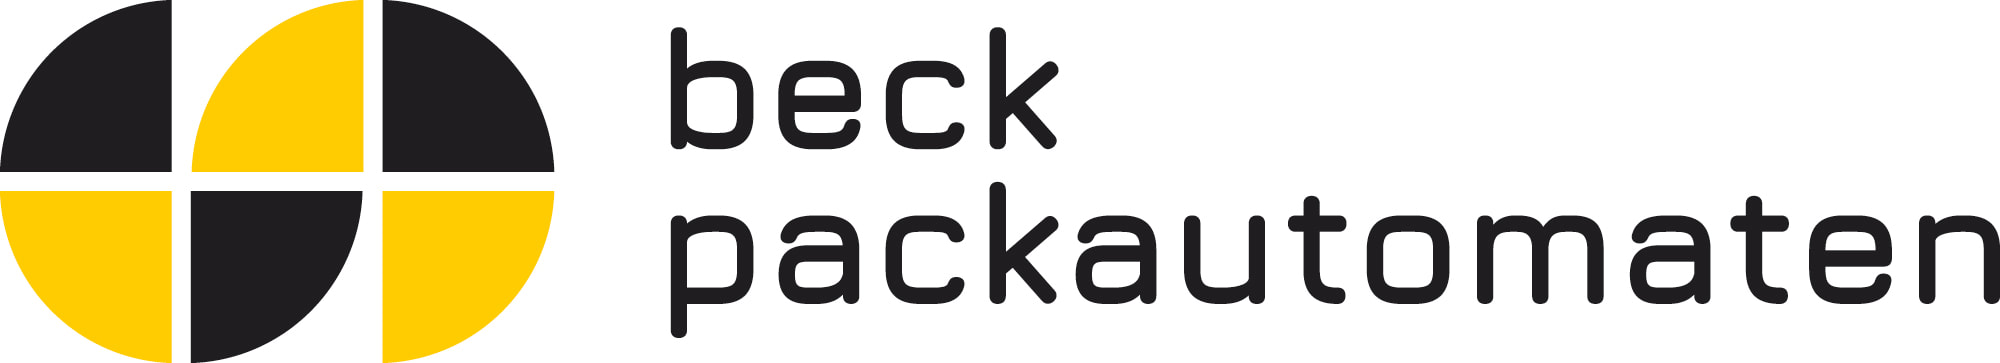 Systemy pakowania Beck Packautomaten